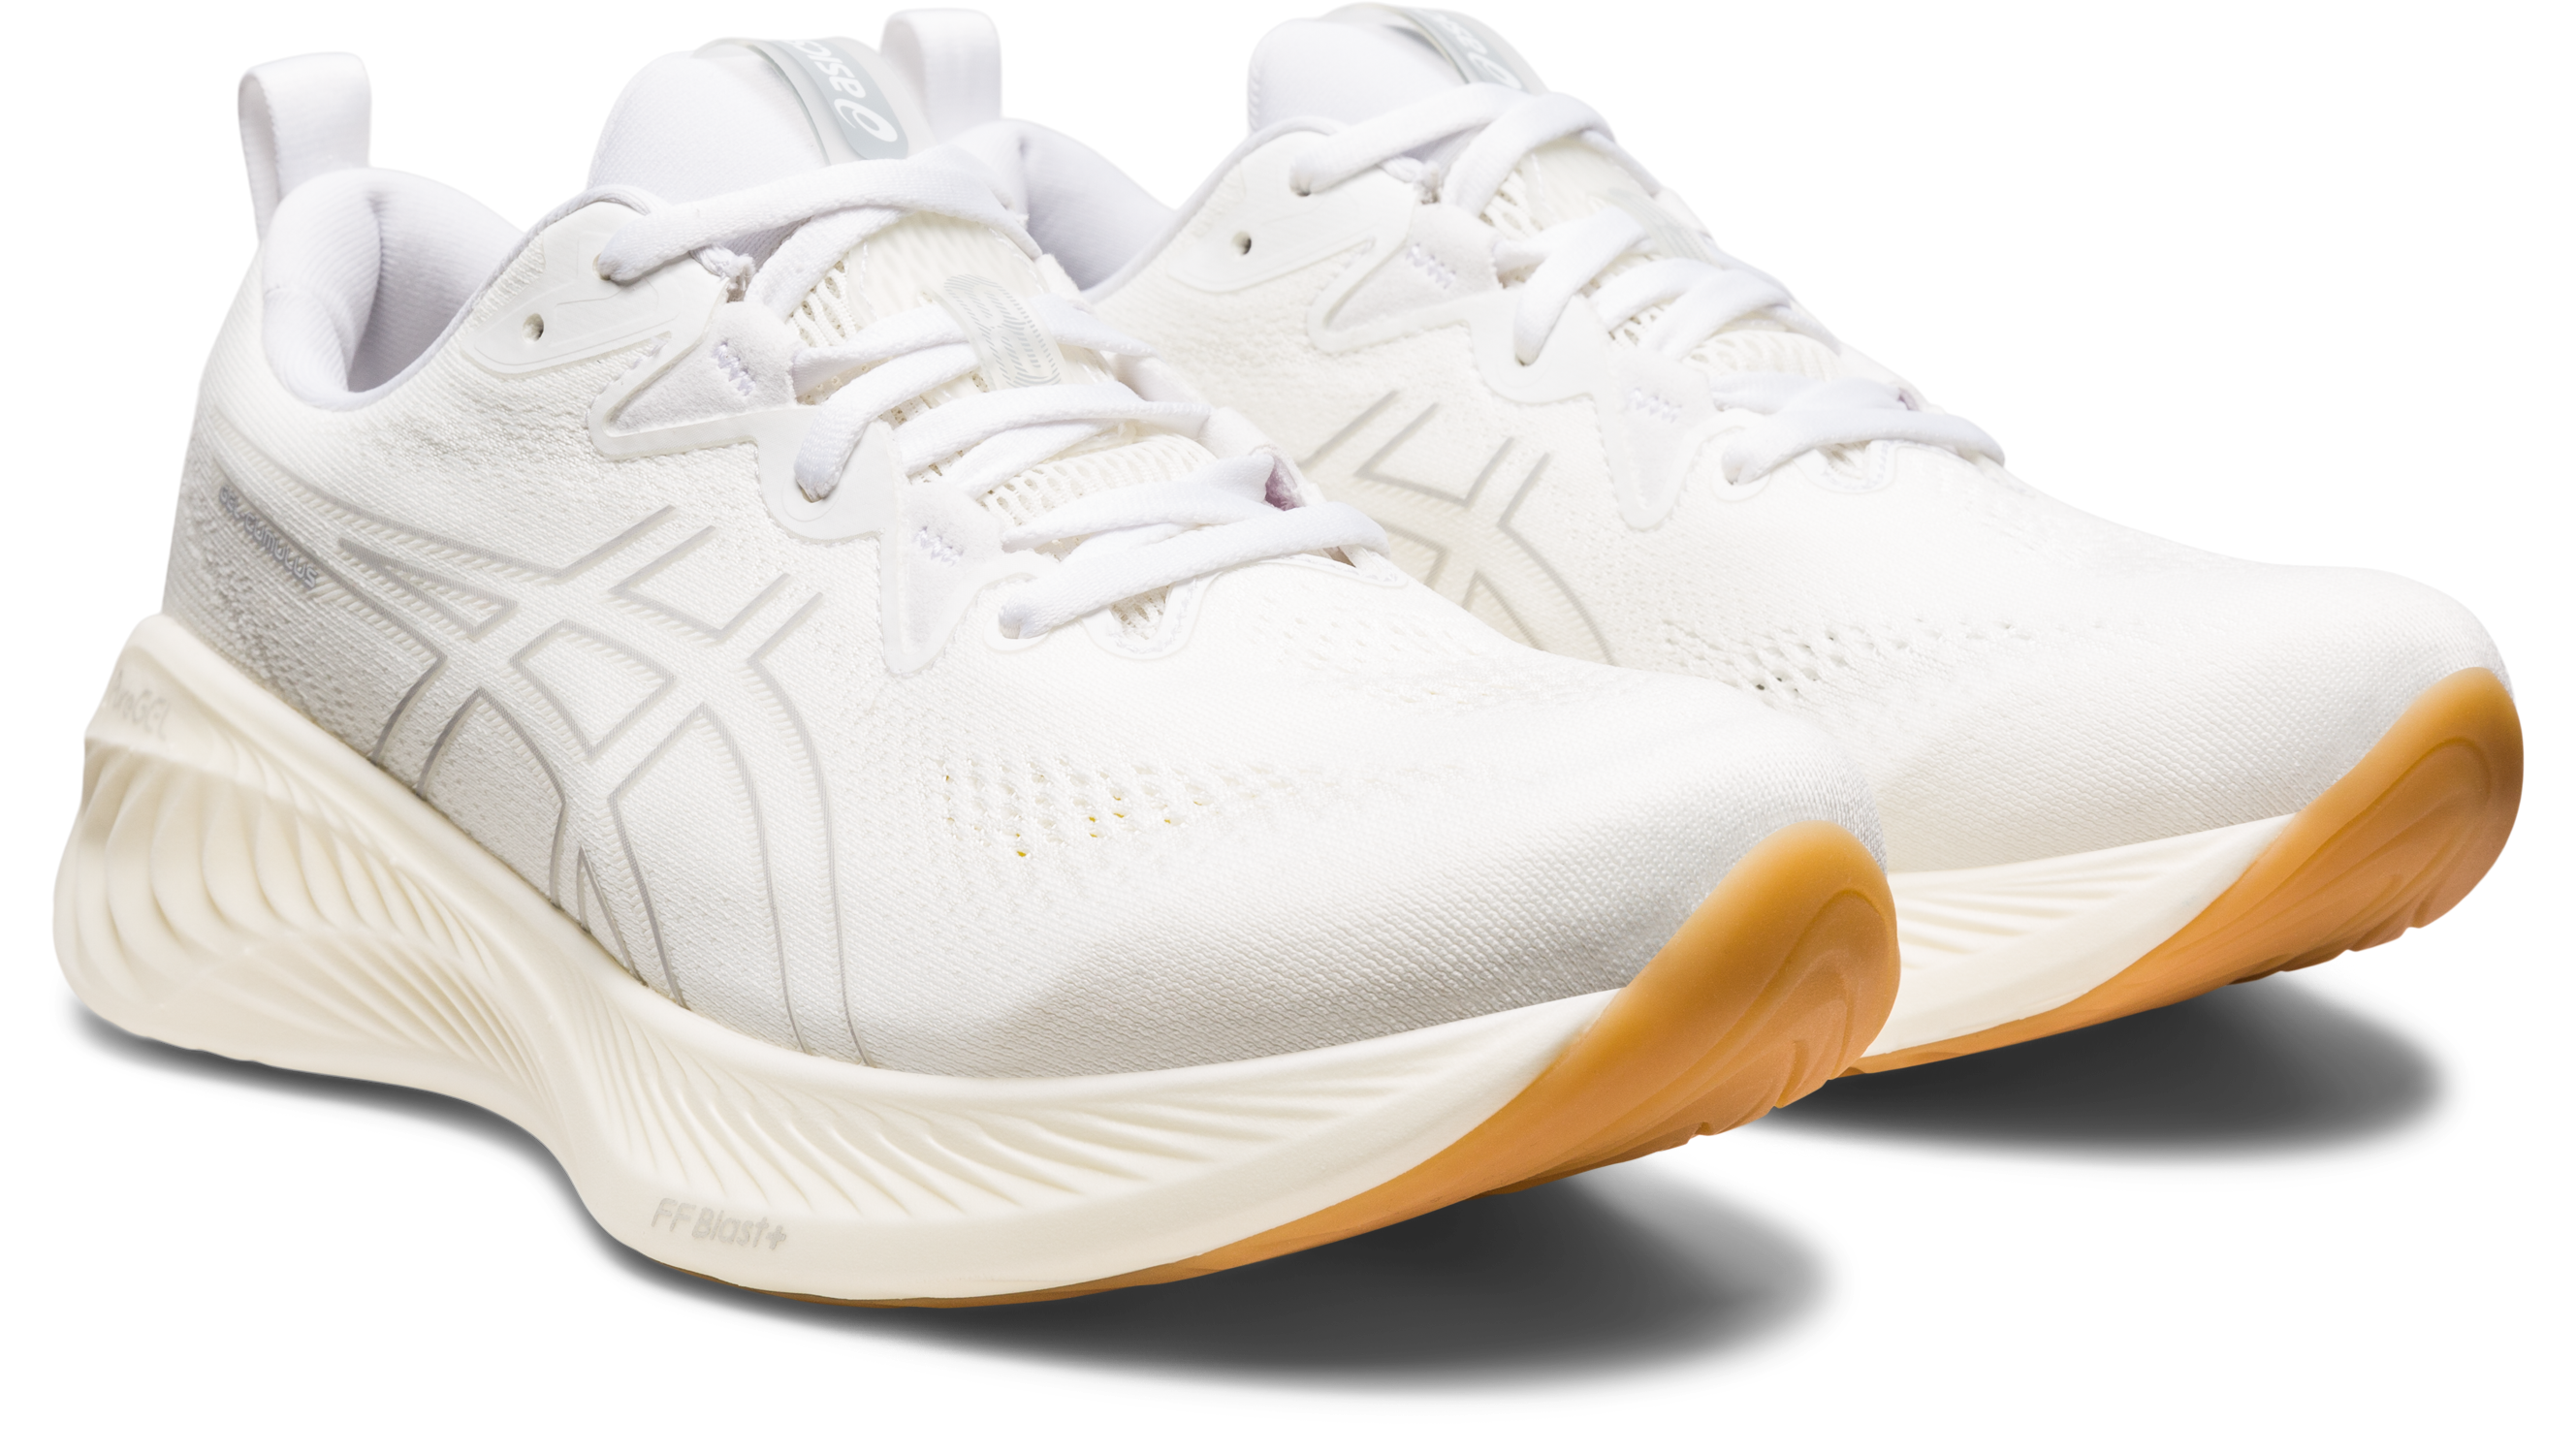 Asics Men's Gel Cumulus 25 Running Shoes in White/White